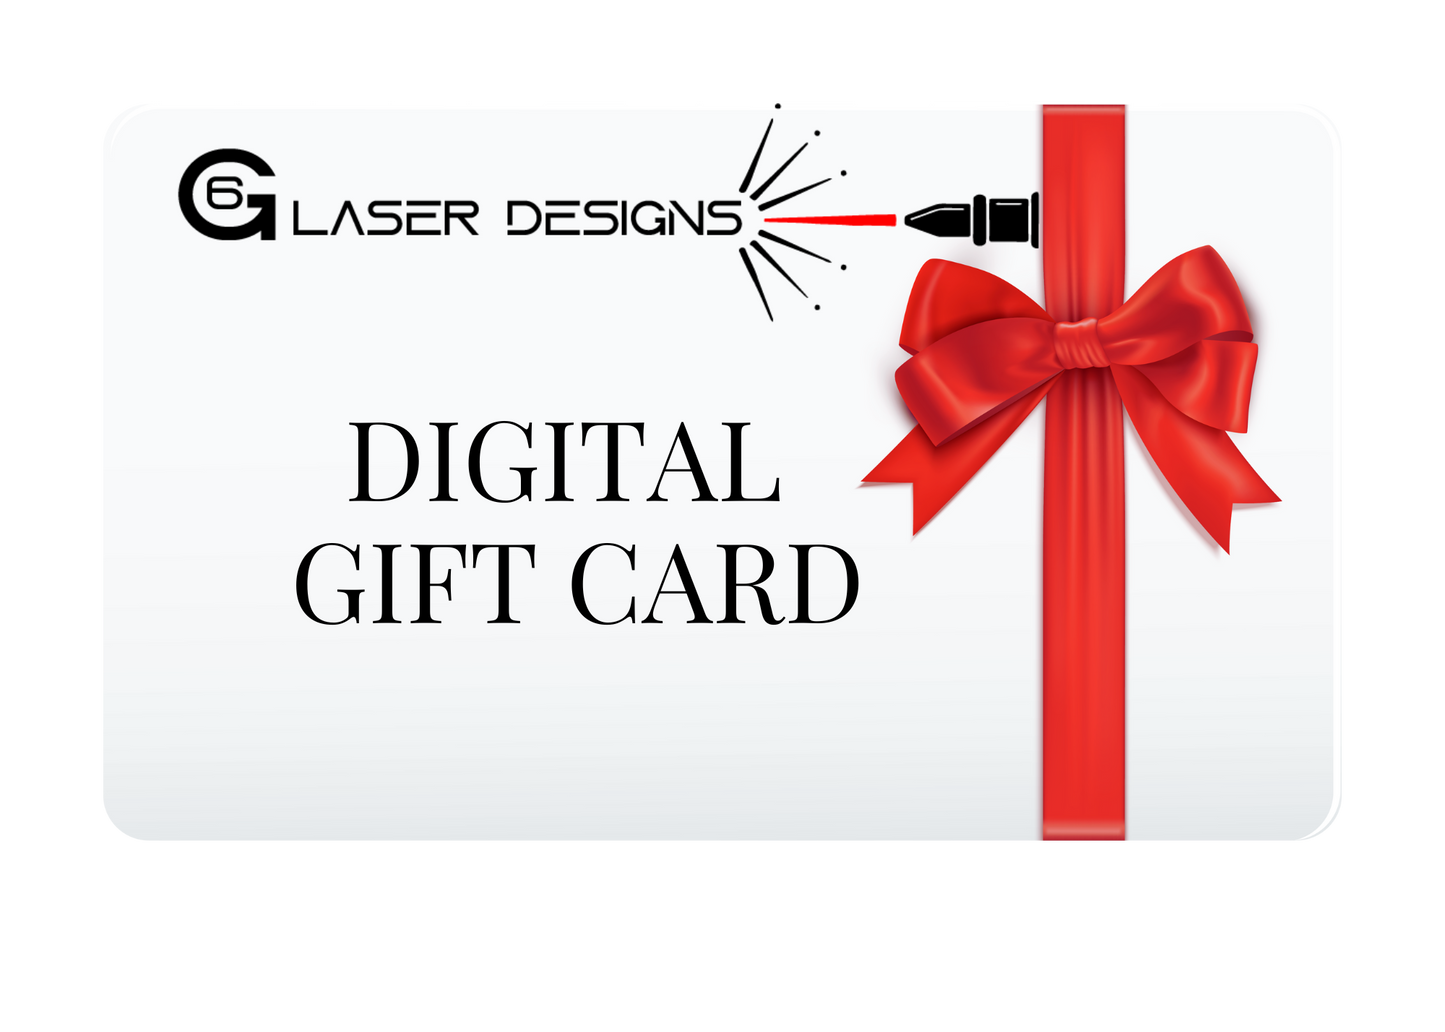 G6 LASER DESIGNS DIGITAL GIFT CARD